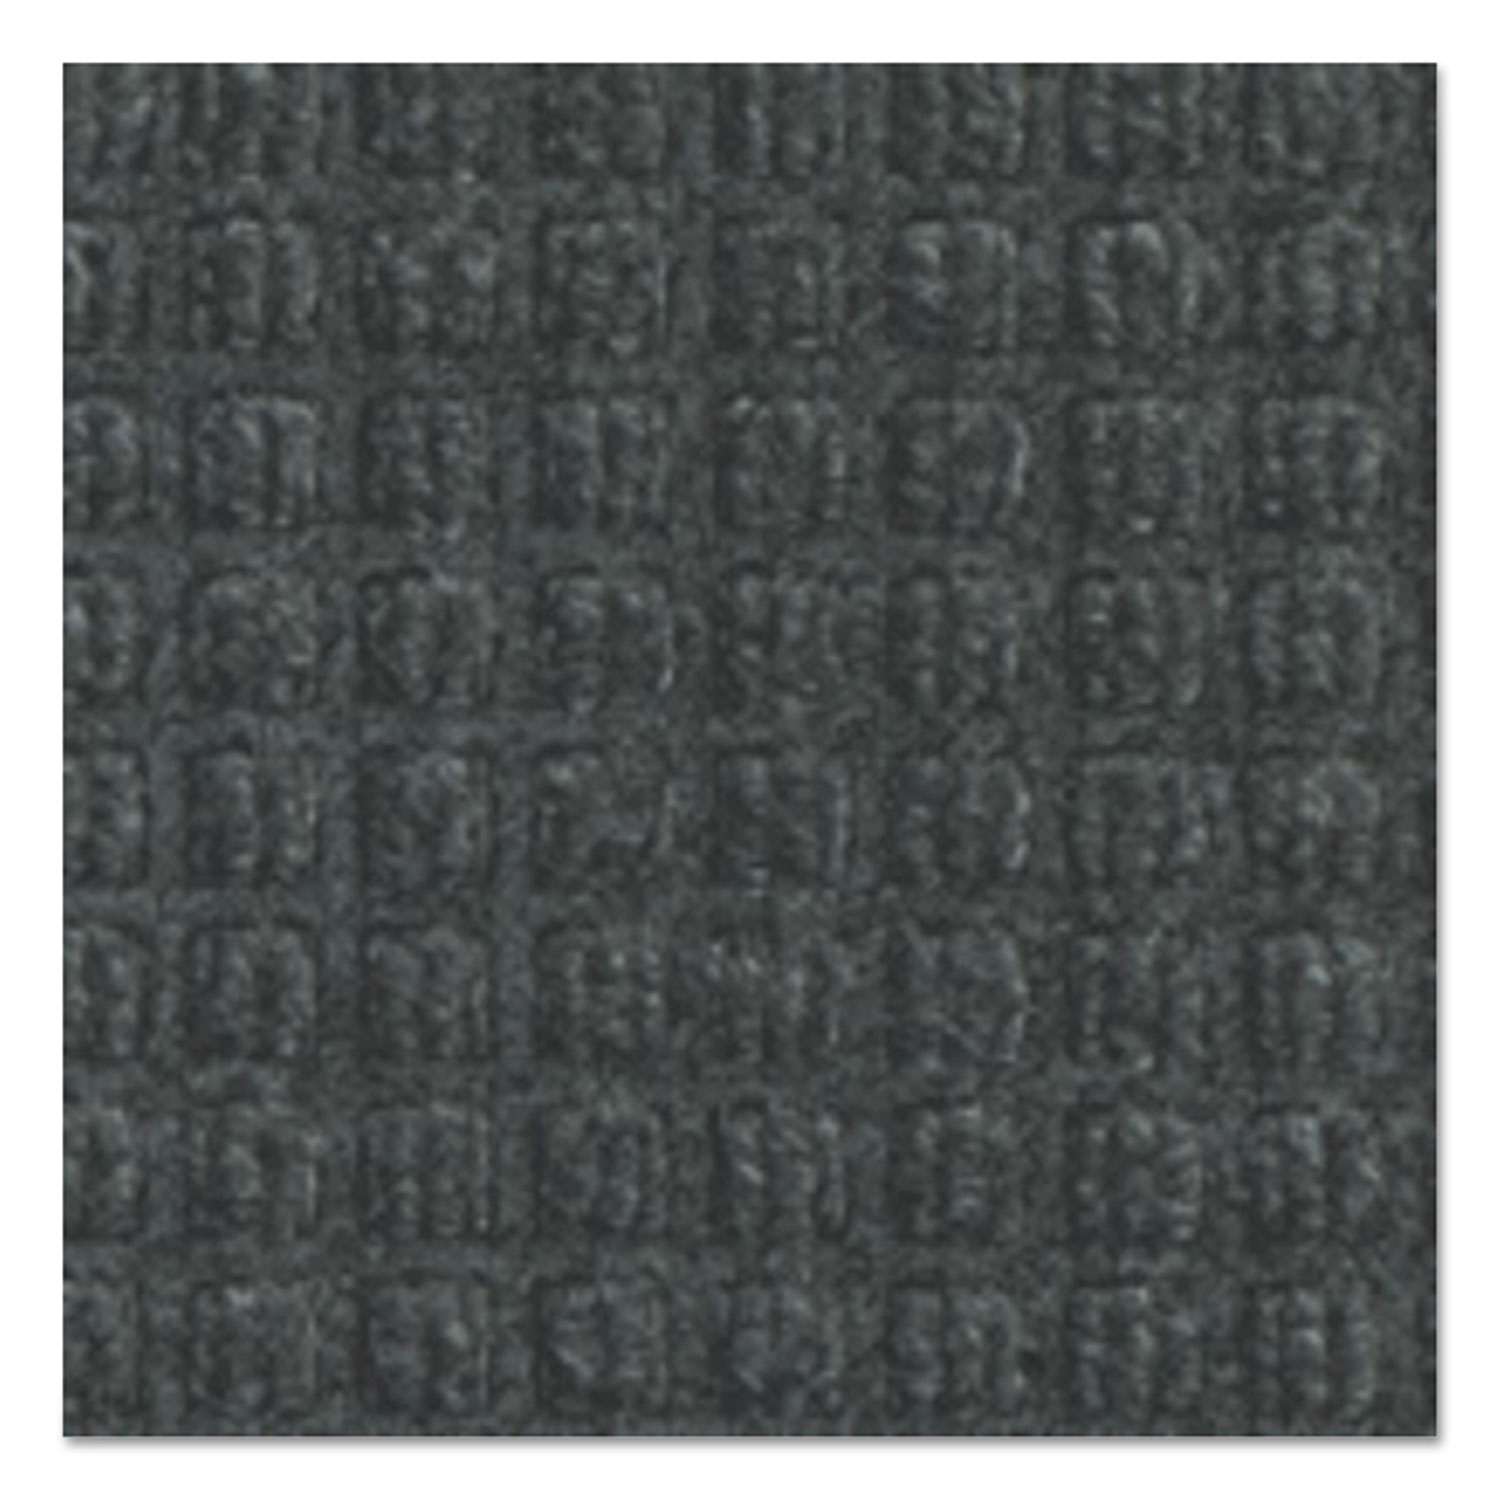 Super-Soaker Wiper Mat w/Gripper Bottom, Polypropylene, 34 x 58, Charcoal